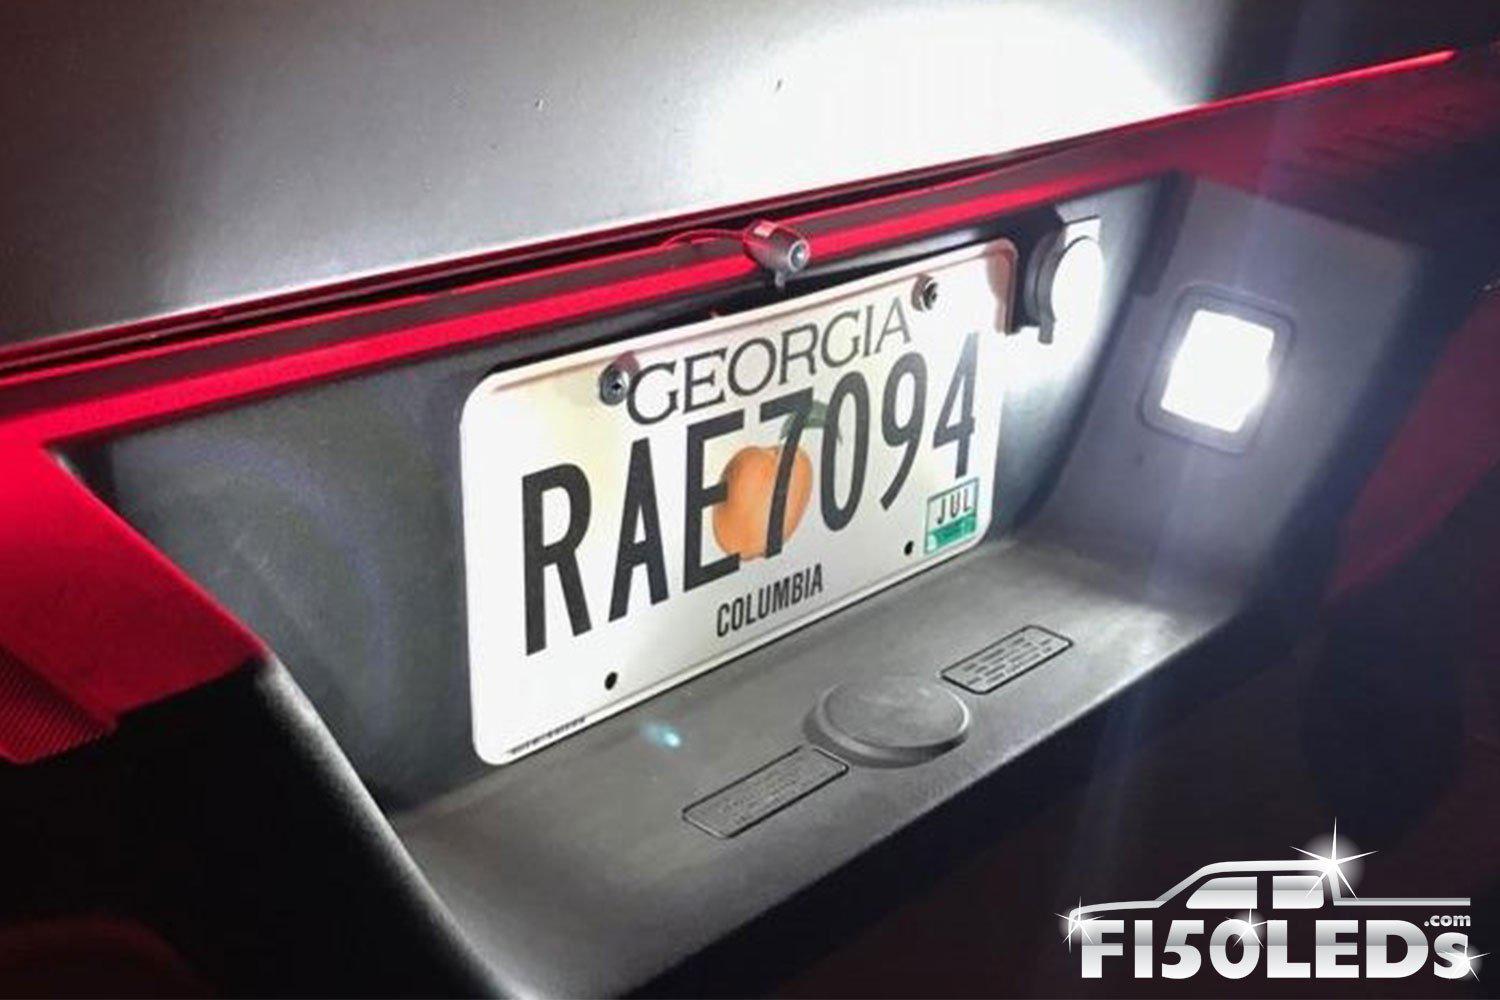 2017 - 2020 F150 RAPTOR LED platinum Tag Lighting-2017-18 F150 RAPTOR LEDS-F150LEDs.com